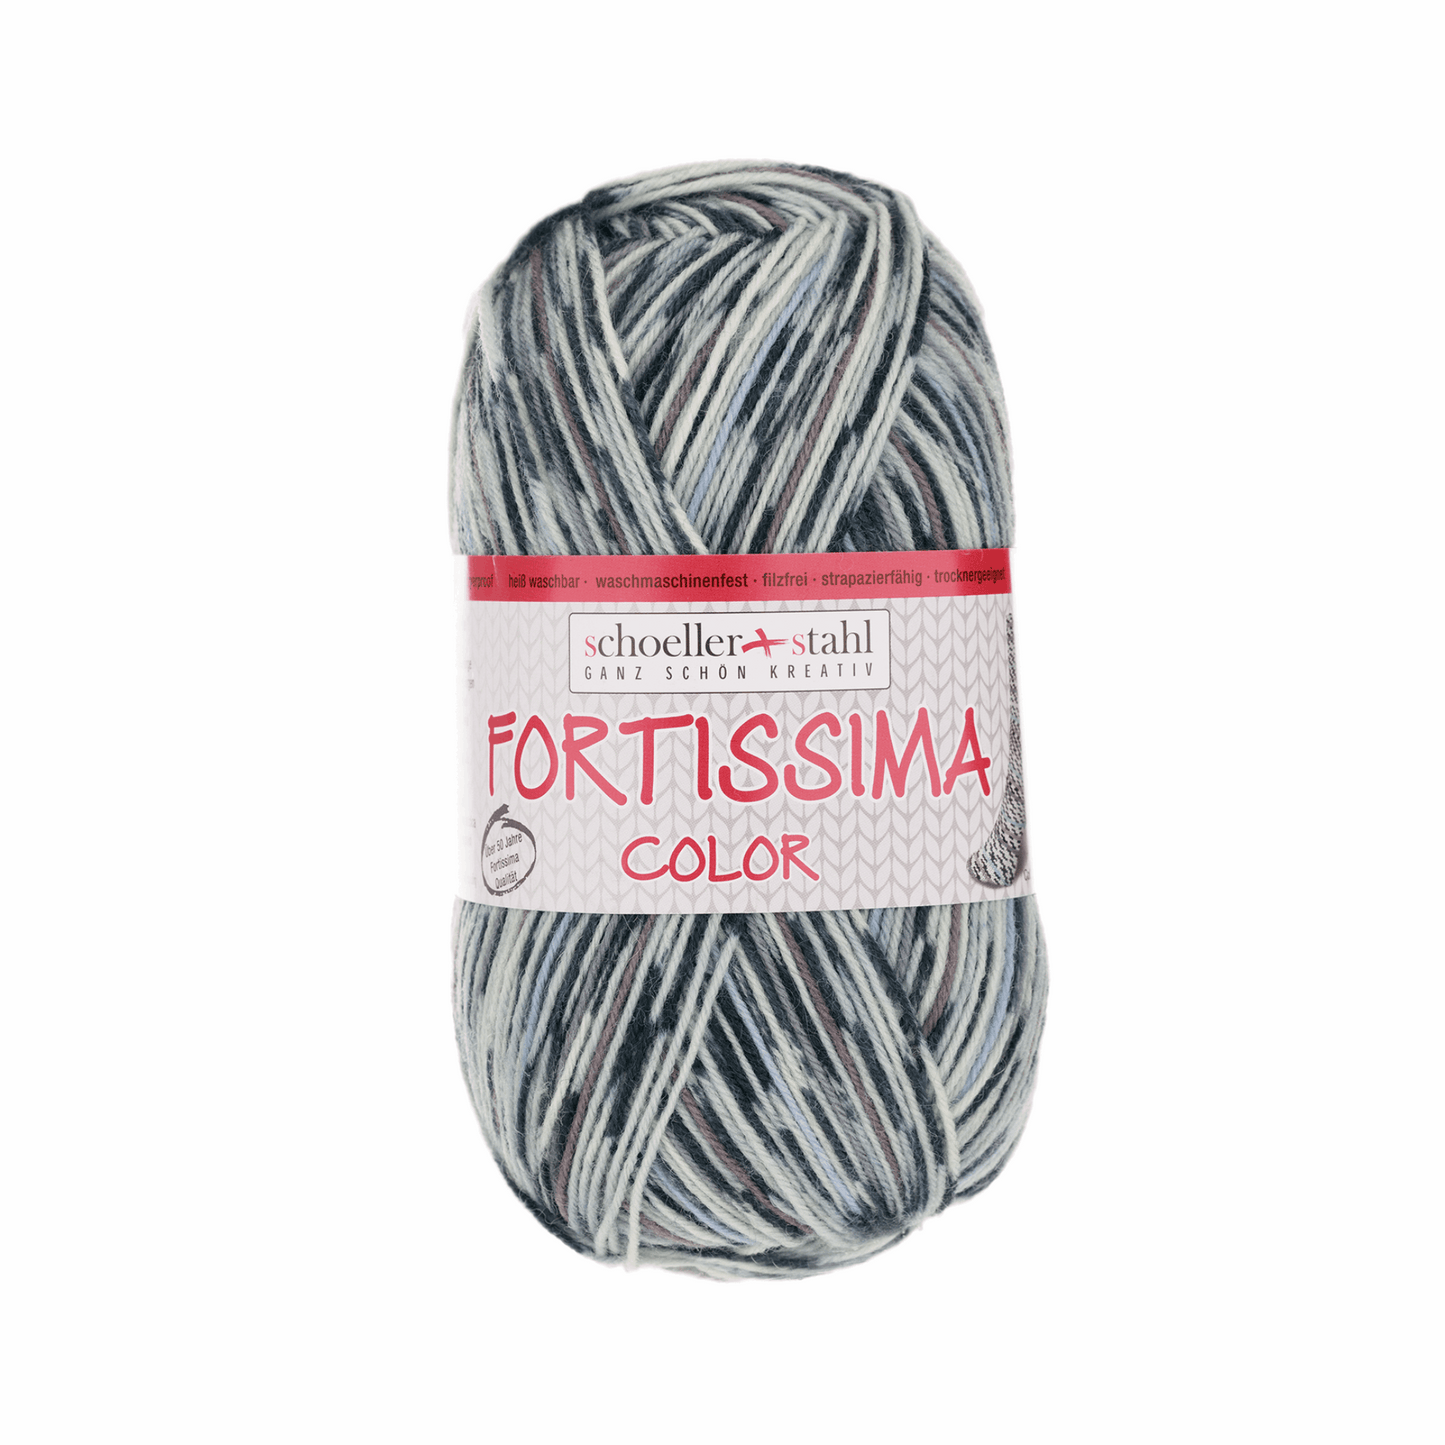 Fortissima socka 4-ply, 90028, color 2501, terrazzo